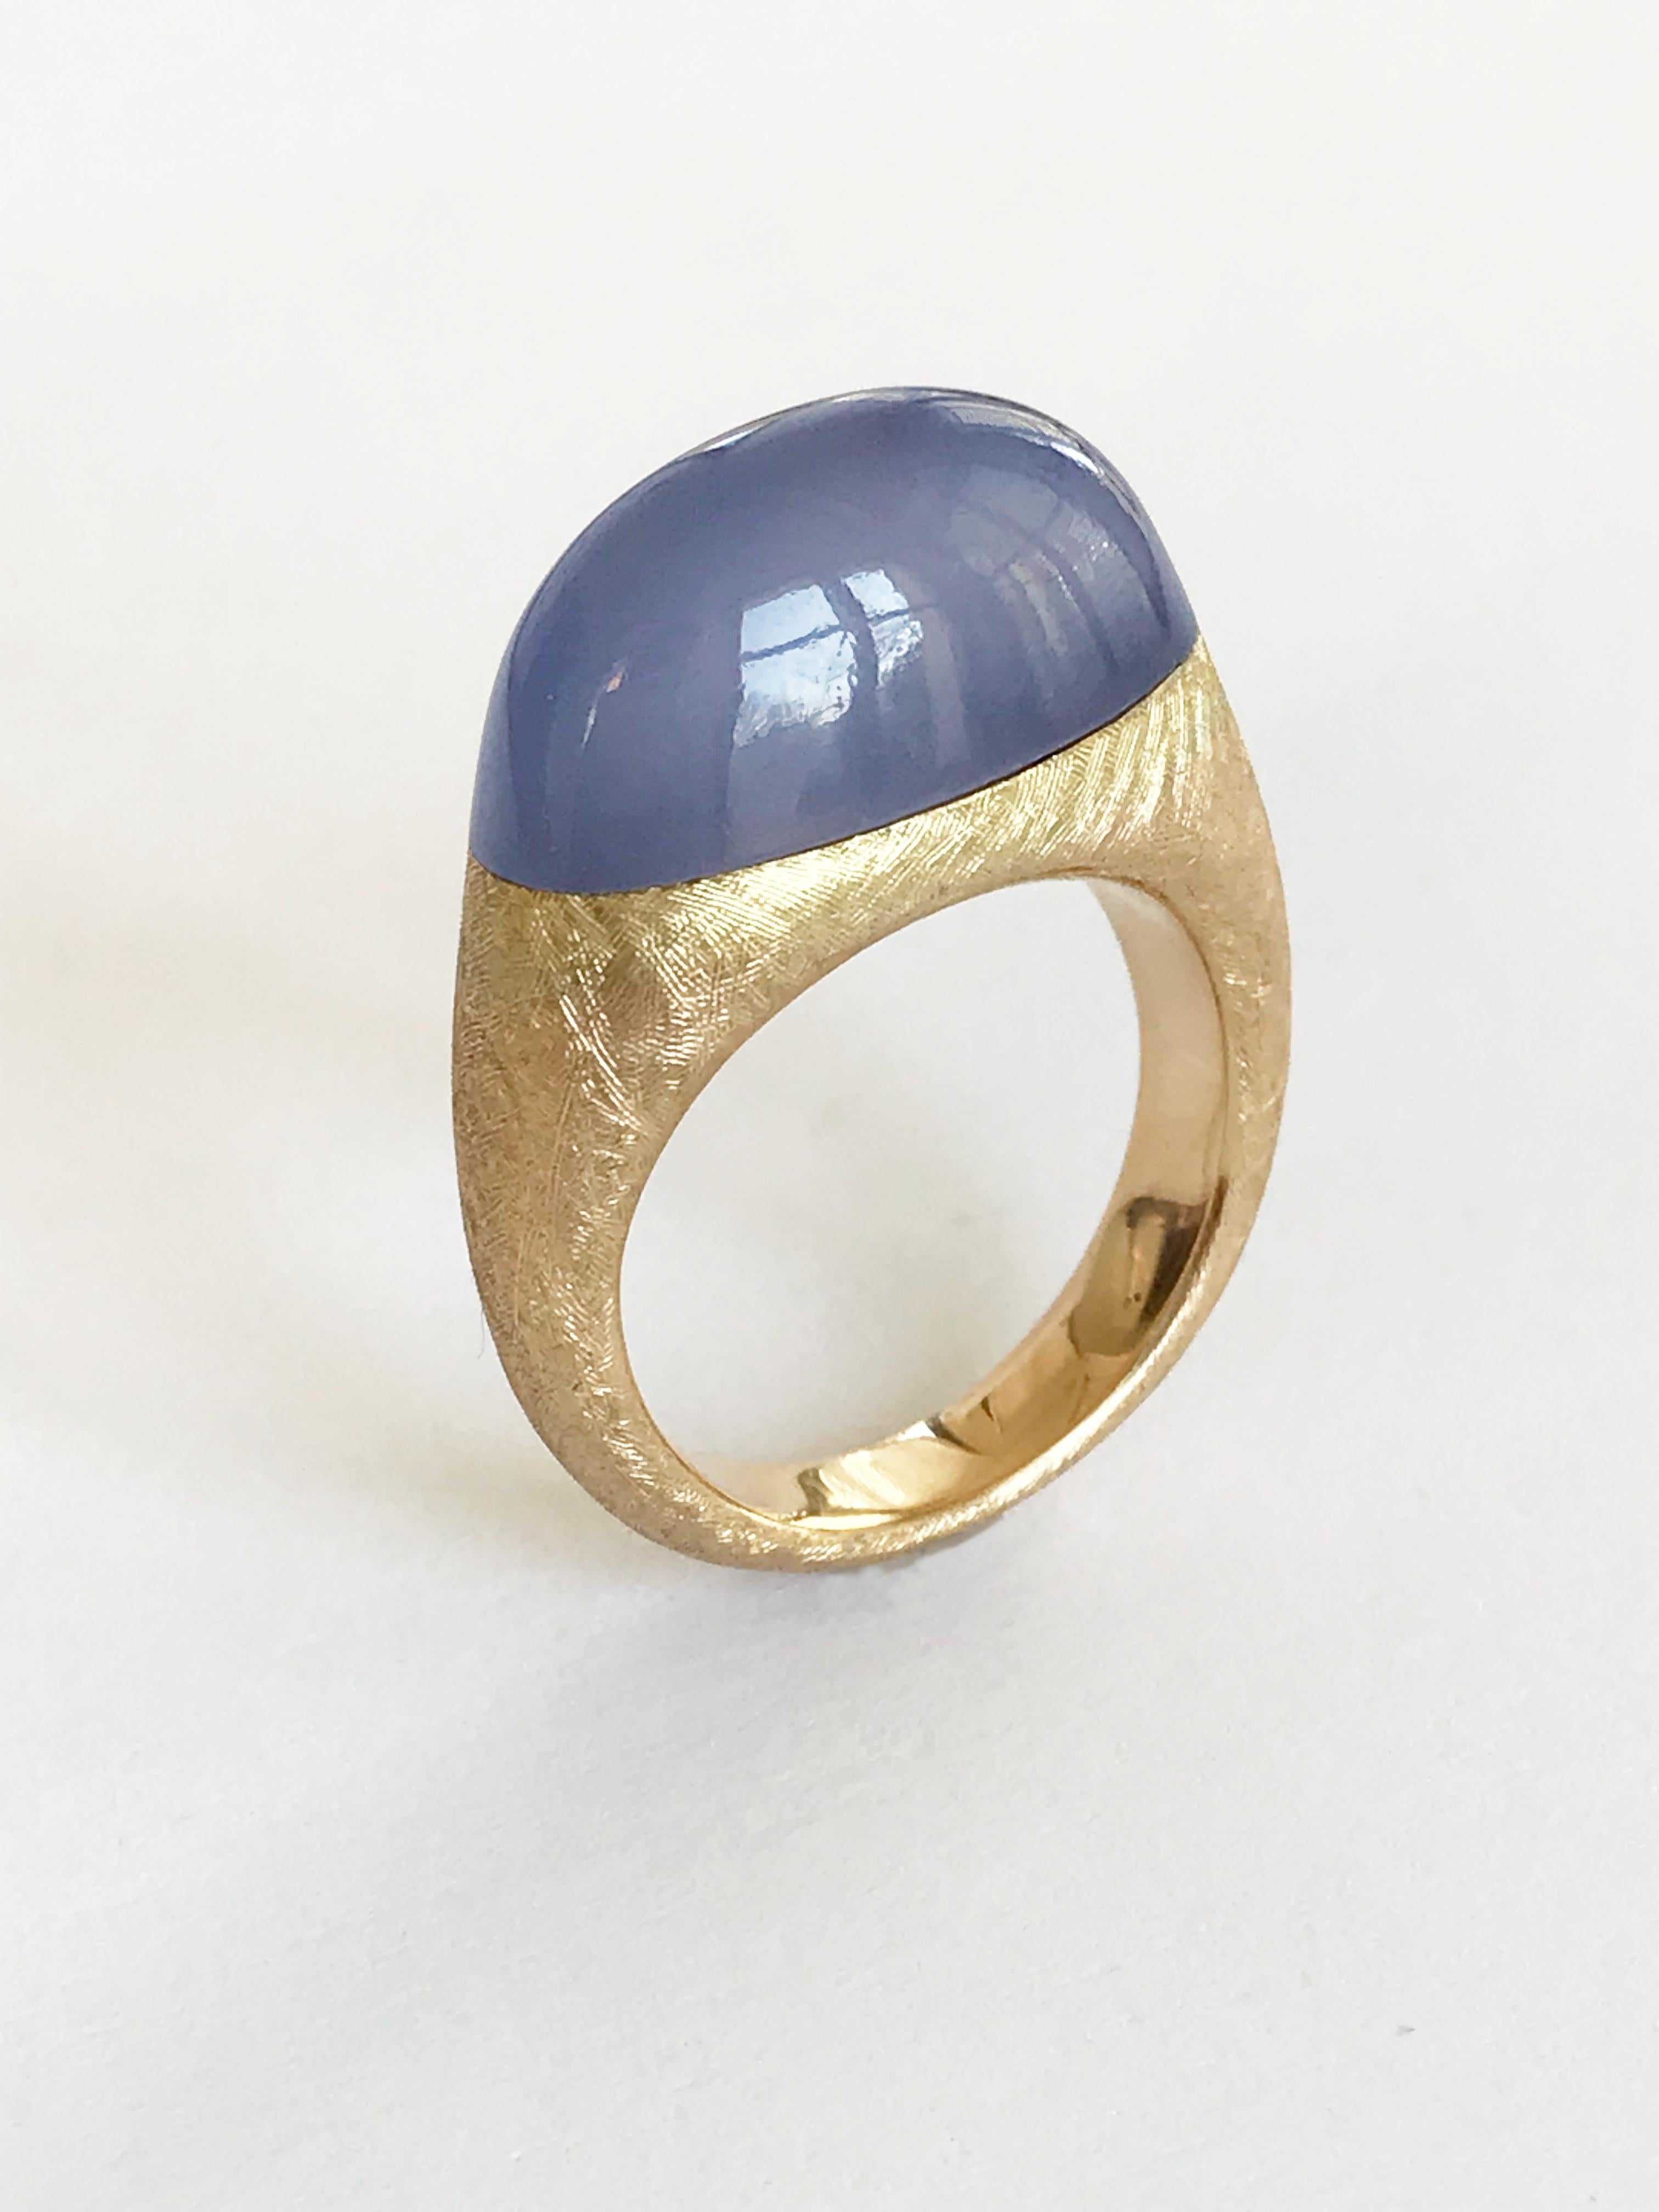 Dalben-Design-Ring aus 18 Karat Gelbgold mit einem 13-karätigen namibischen Chalzedon in Lünettenfassung.
Ring Größe 7 - EU 54 .
Der Ring wird in unserem Atelier in Como, Italien, komplett handgefertigt und in höchster Qualität verarbeitet.